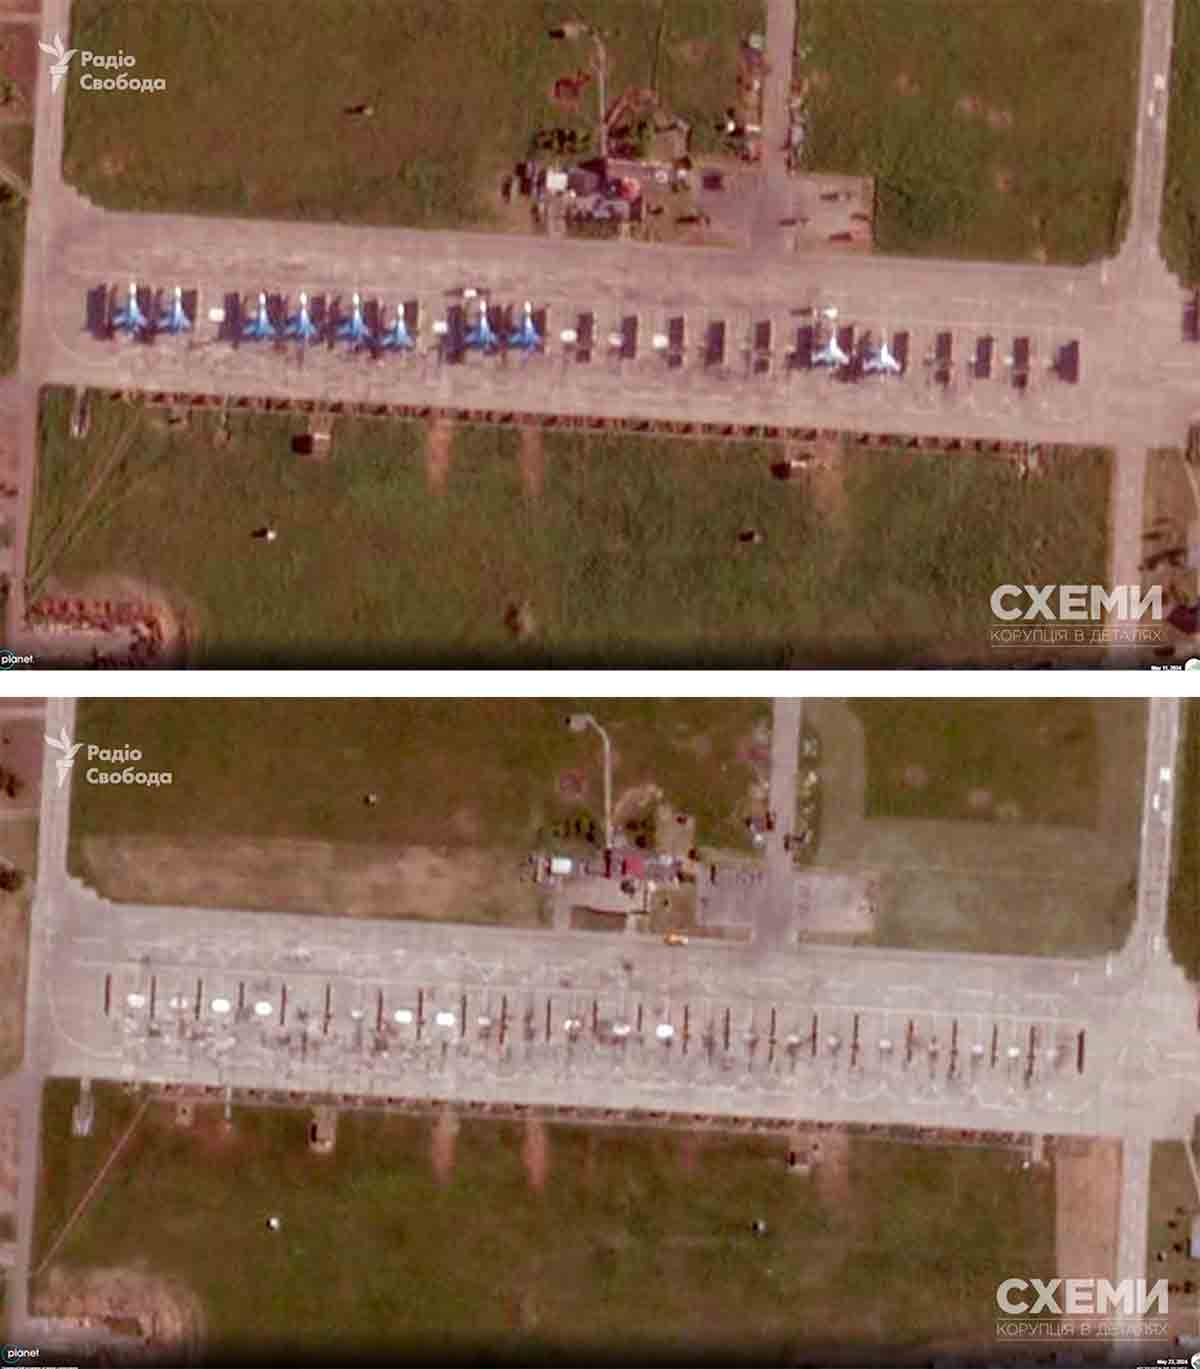 Flygplan från "Ryska Riddare" förstört i drönarattack på den ryska flygbasen Kushchevskaya. Foto: Reprodução cxemu